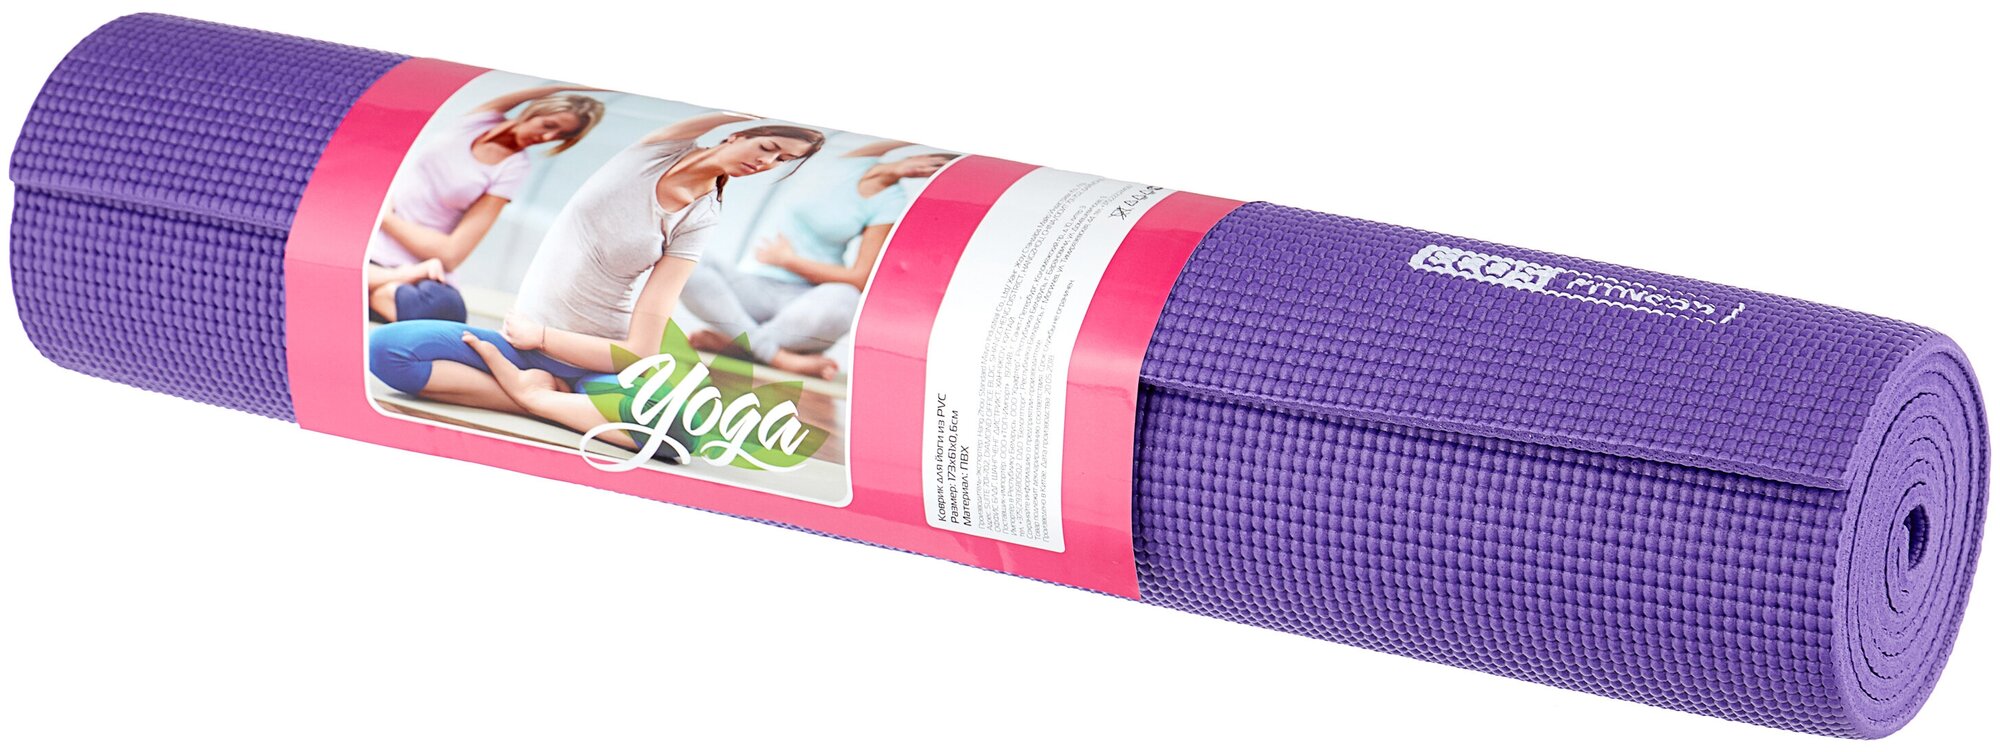 Коврик для йоги Ecos, ПВХ, 173 x 61 x 0,6 см, фиолетовый